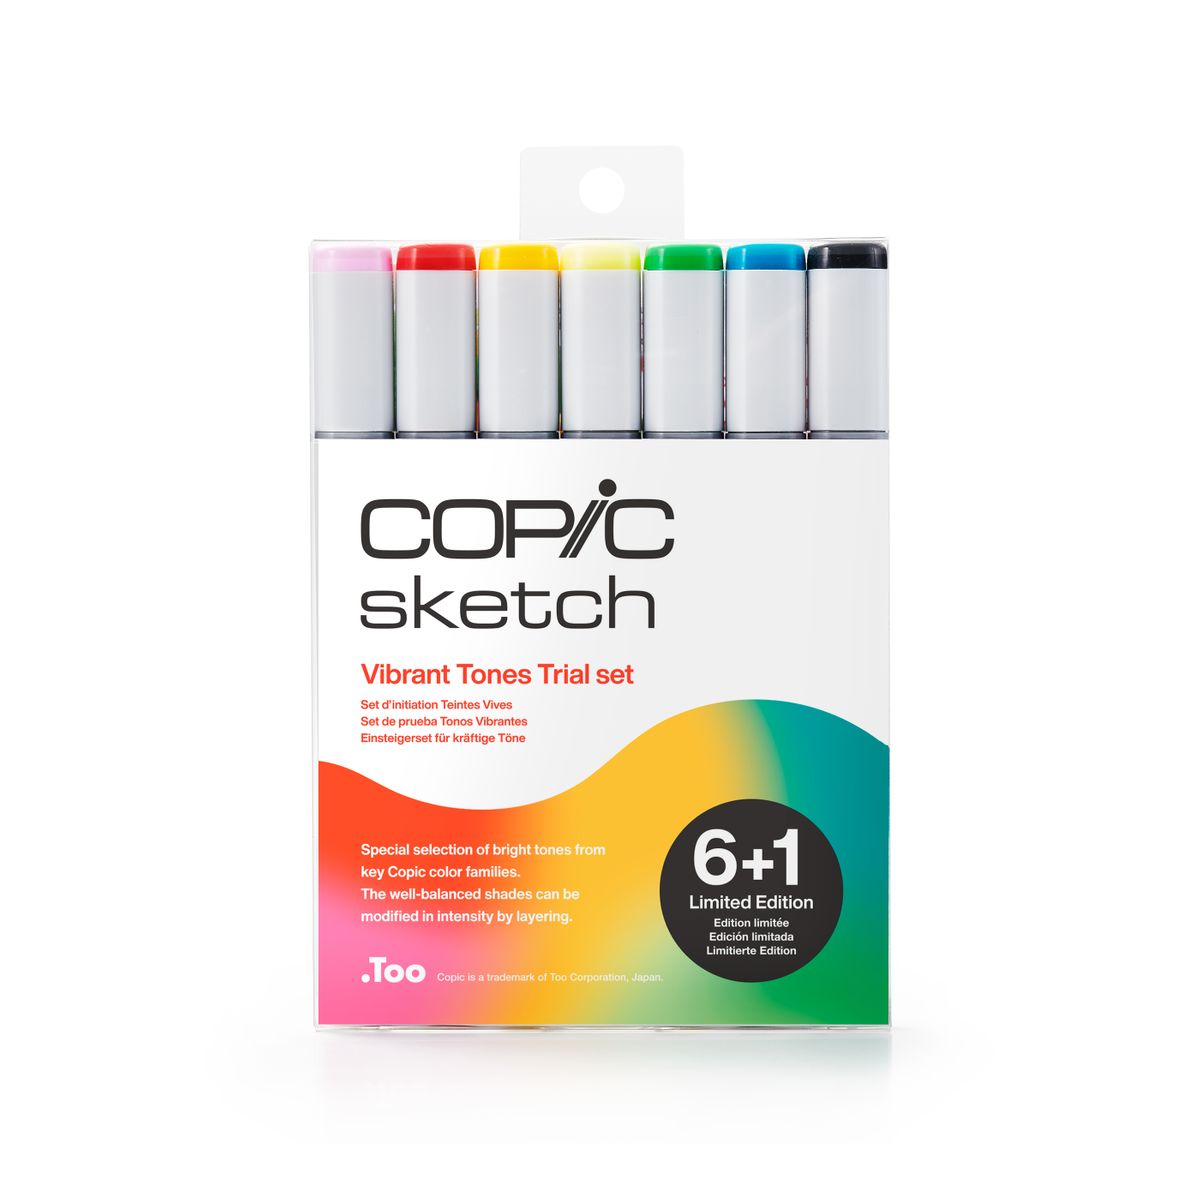 Kit Copic Sketch Vibrant Tones Trial C/ 7 Cores (6+1) – Edição Limitada